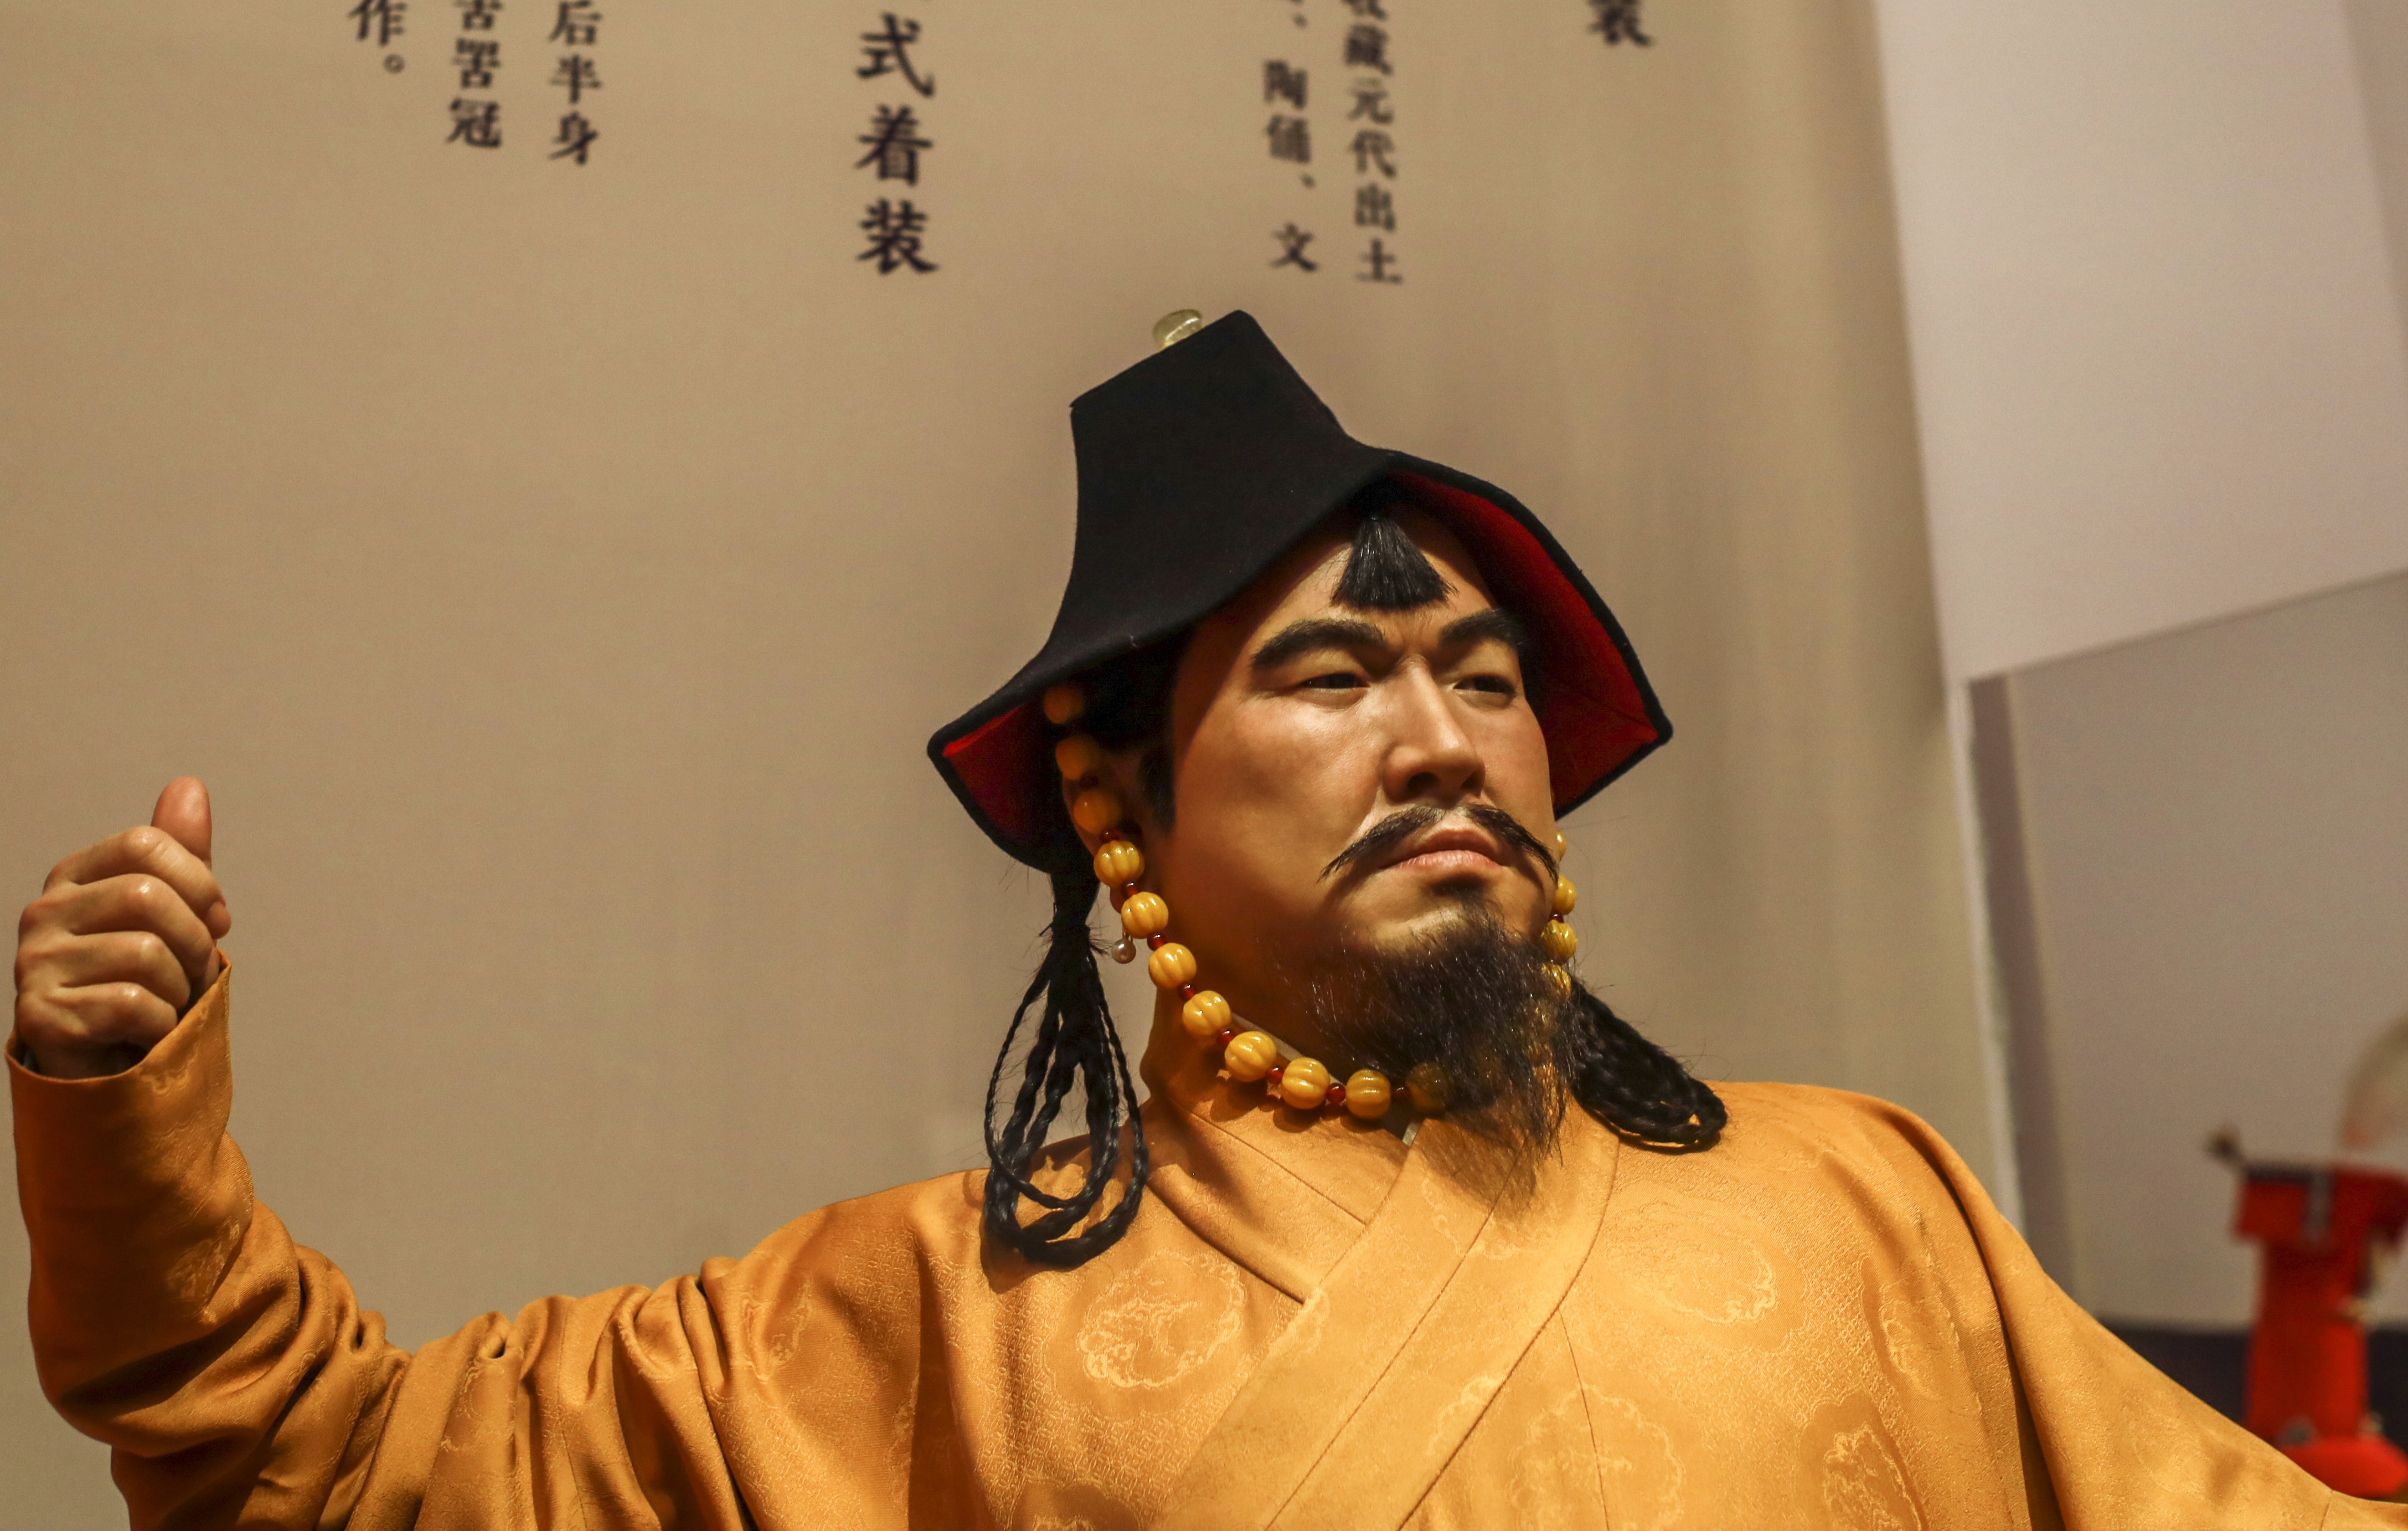 复原人像 元代男性着装 为蒙古族发式,头戴幔笠元代男性着装(未完待续